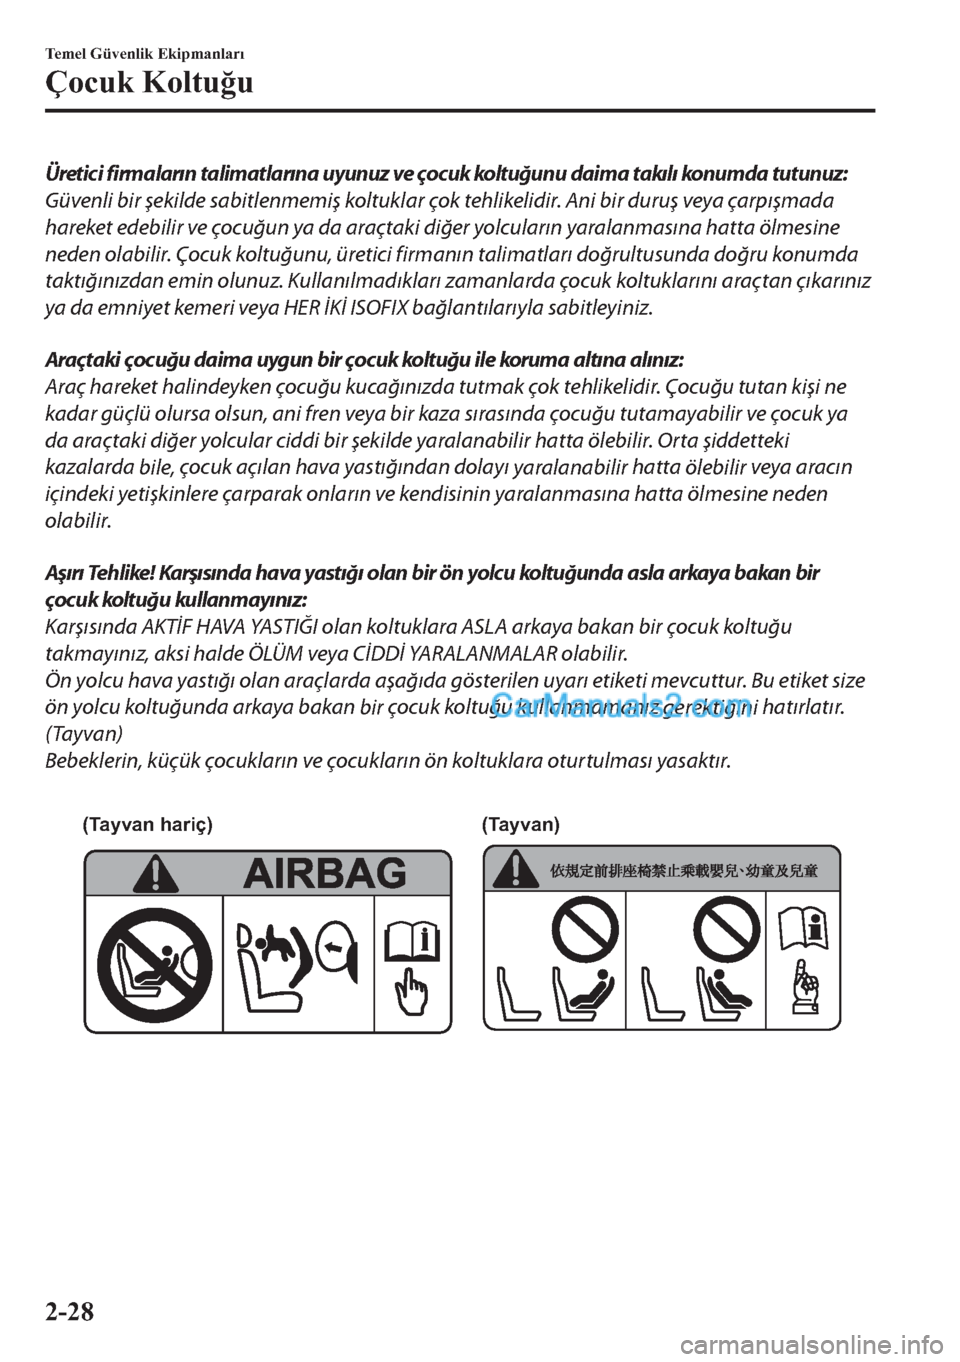 MAZDA MODEL 2 2019  Kullanım Kılavuzu (in Turkish) Üretici firmaların talimatlarına uyunuz ve çocuk koltuğunu daima takılı konumda tutunuz:
Güvenli bir şekilde sabitlenmemiş koltuklar çok tehlikelidir. Ani bir duruş veya çarpışmada
hare